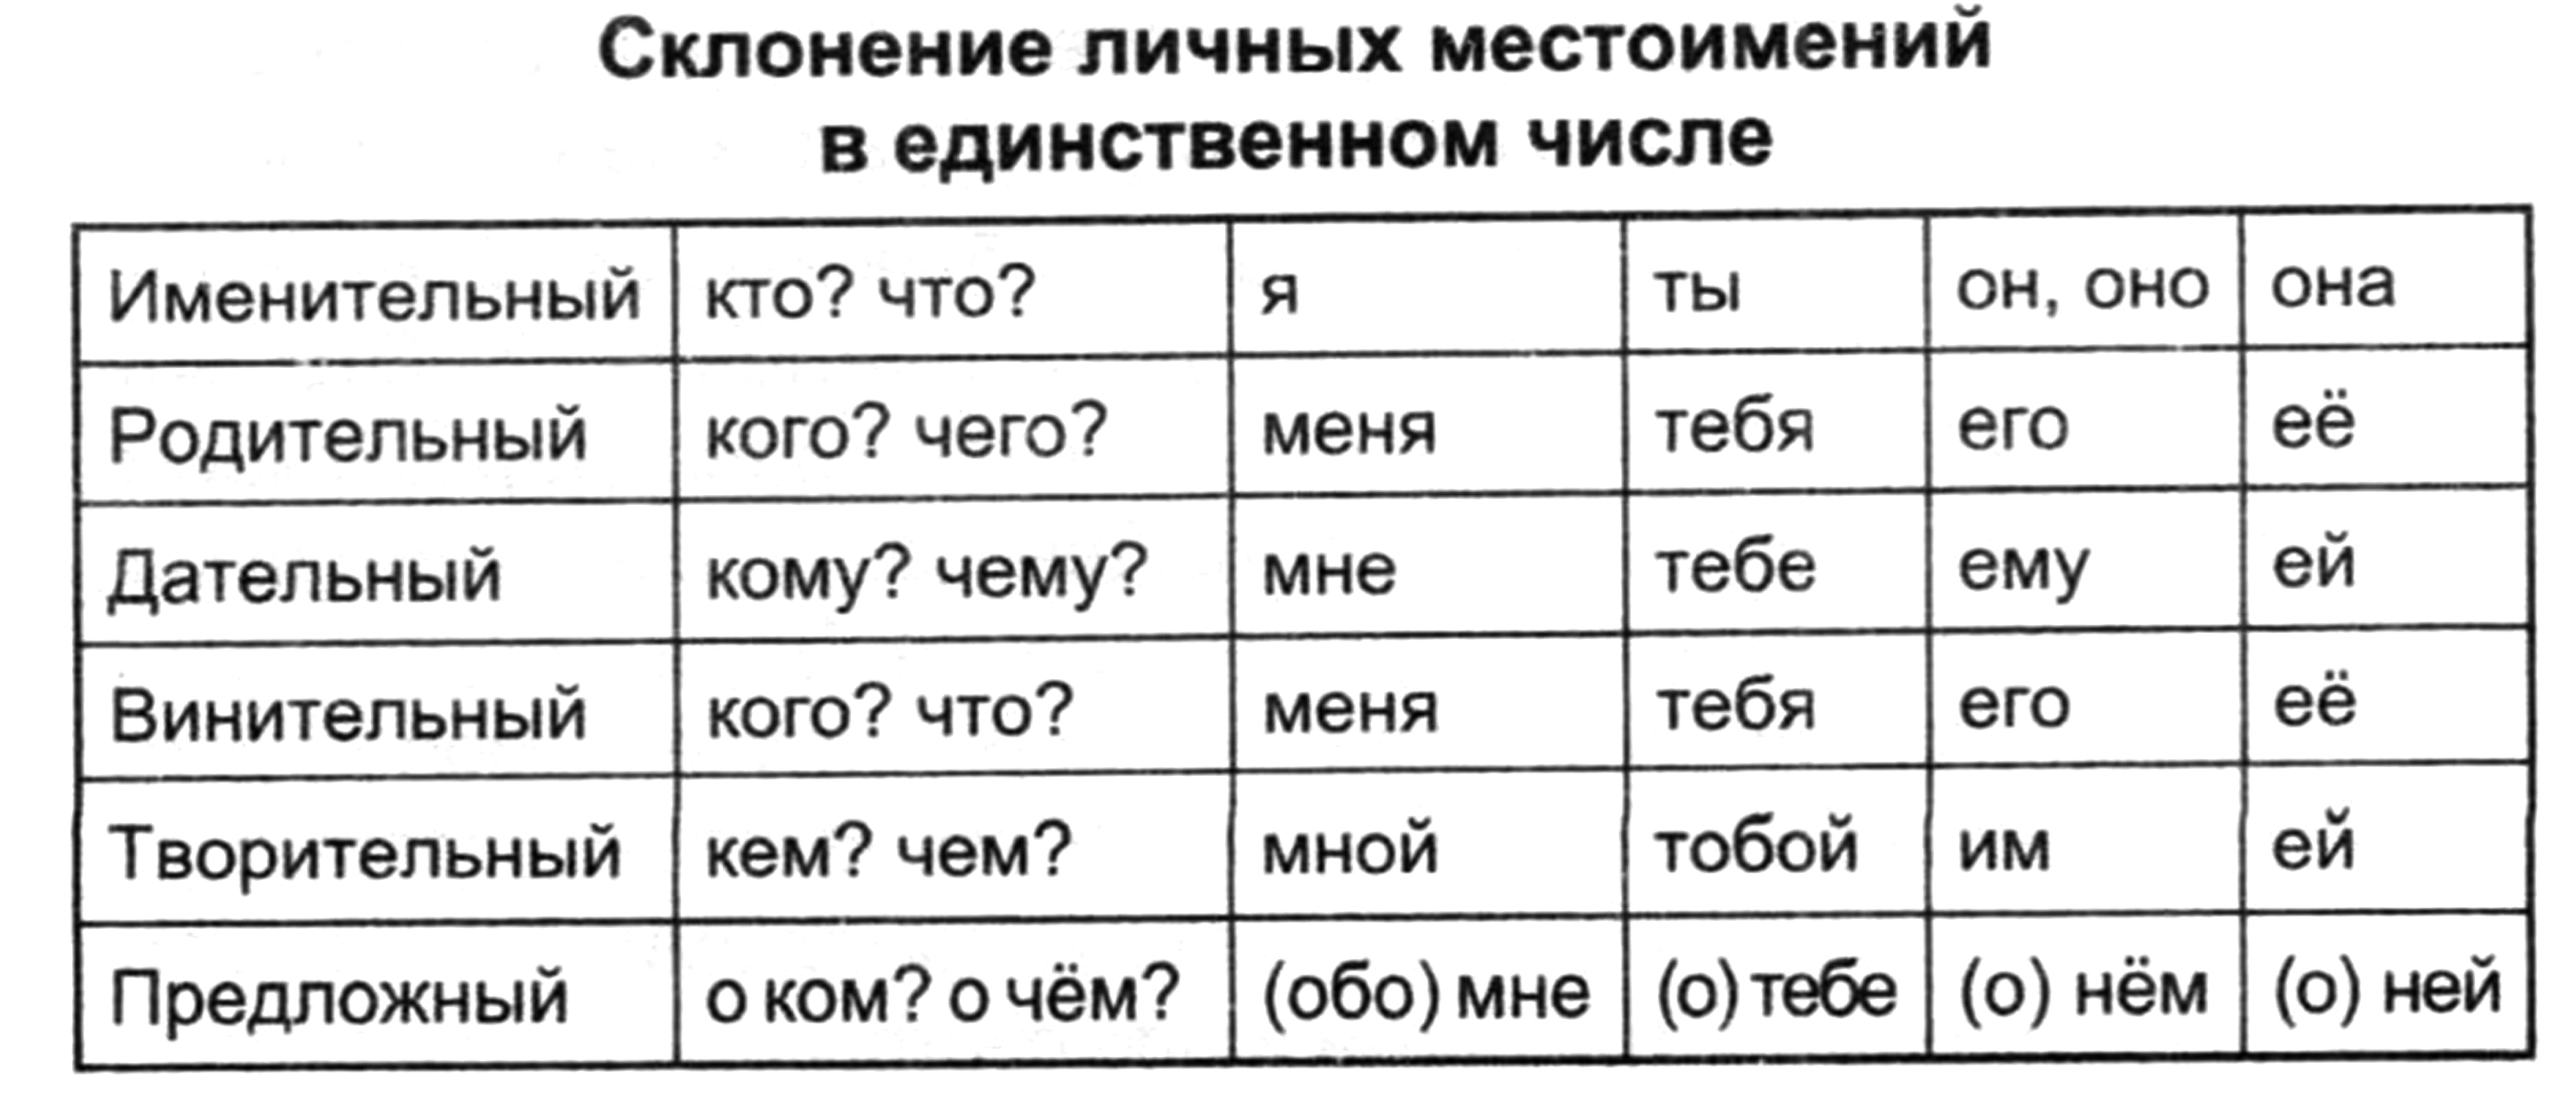 Склонения личных местоимений в русском языке. Склонение личных местоимений. Склонение личных мес. Склонение личных местоимений таблица. Склонение личных местоимений единственного числа.